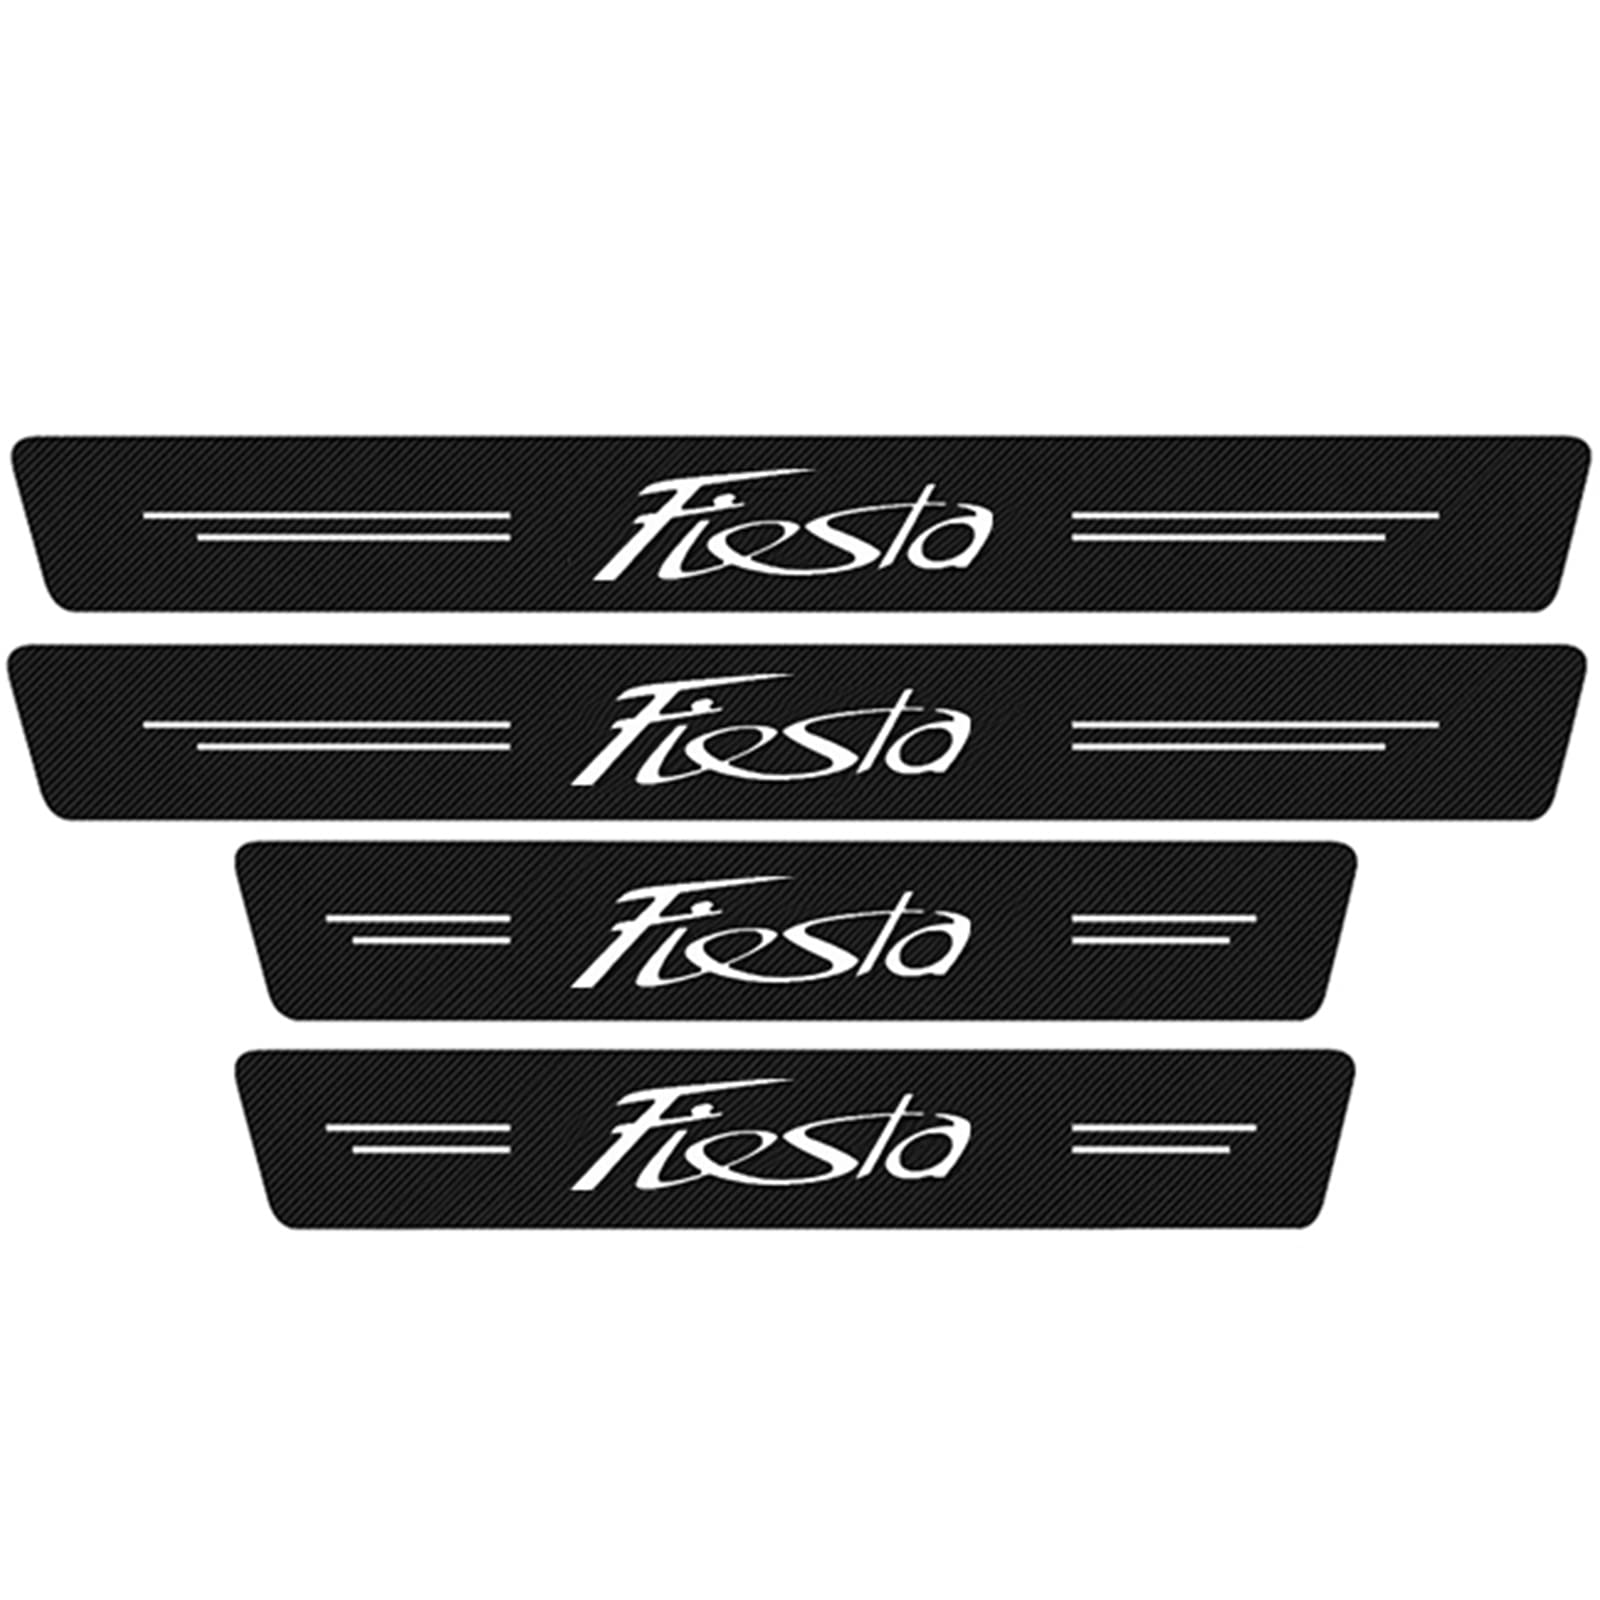 4 StüCk Auto Selbstklebend Kohlefaser Einstiegsleisten Kick Plates Aufkleber für Fo-rd Focus Fiesta, Türschwelle Lackschutzfolie Anti Scratch Trim Sticker Zubehör, Fiesta von YUPACK